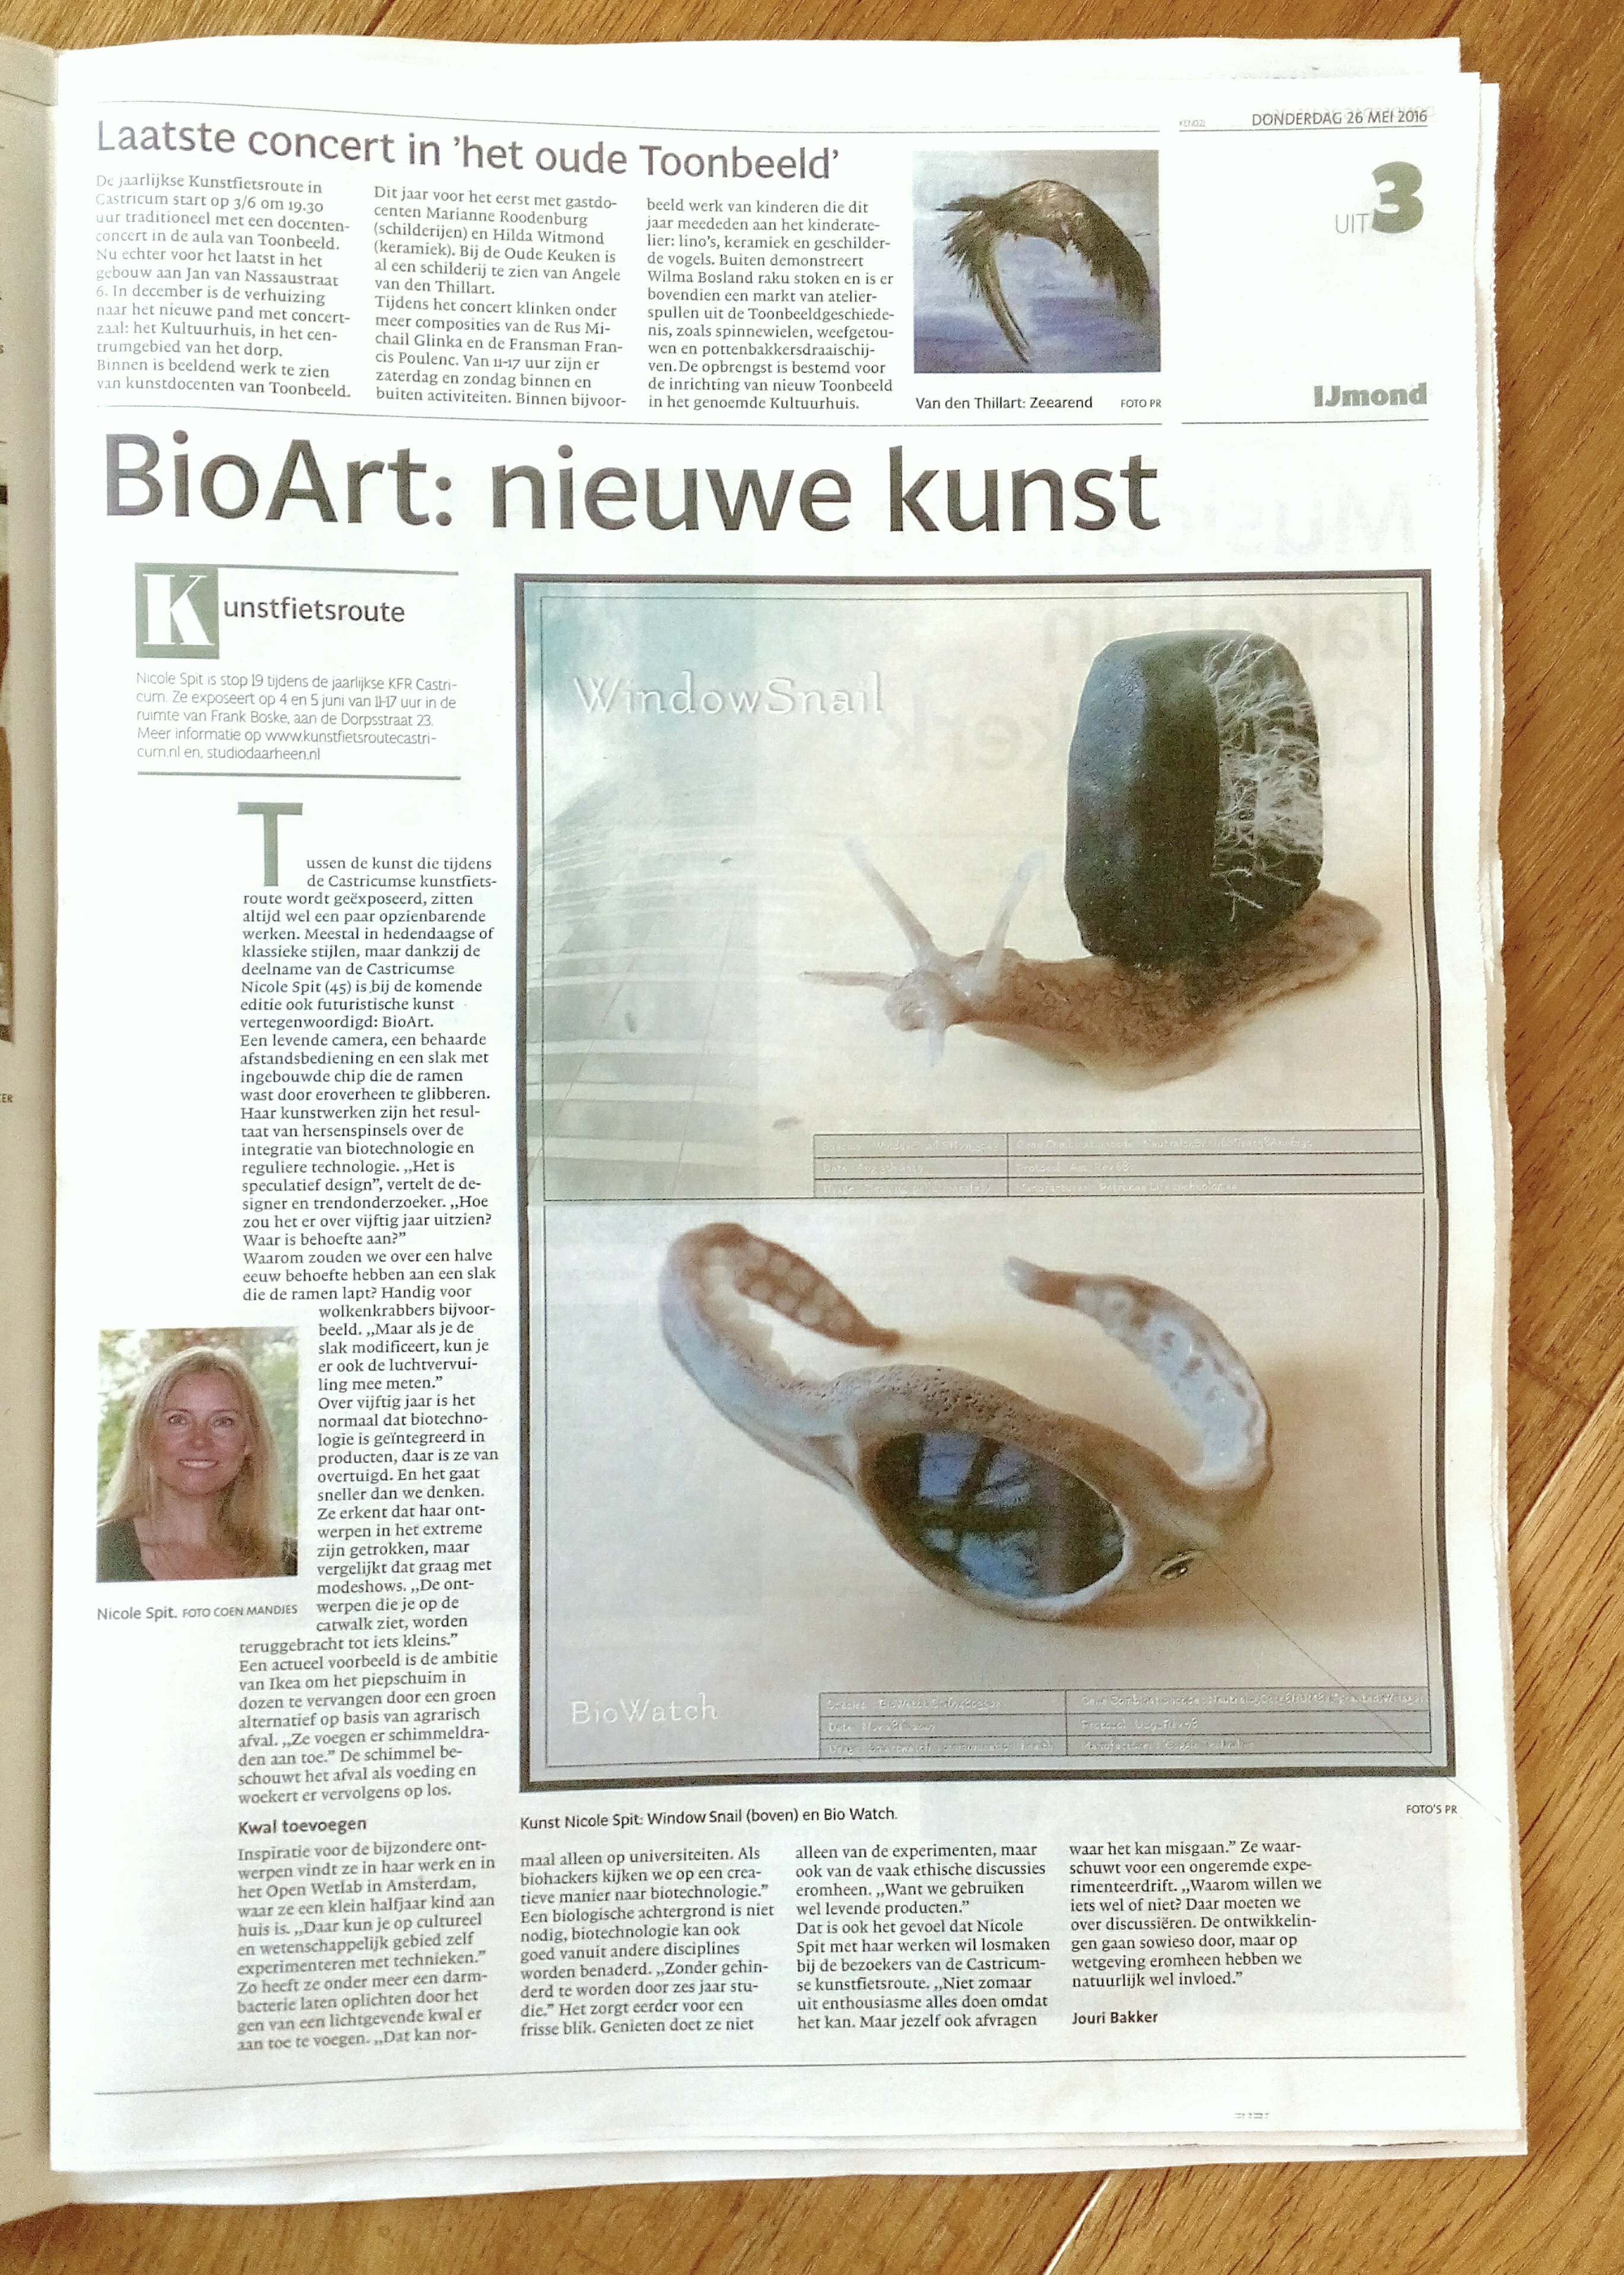 Artikel over futuristische BioArt van kunstenaar Nicole Spit (foto: Coen Mandjes) in NoordHollands Dagblad van 25052016